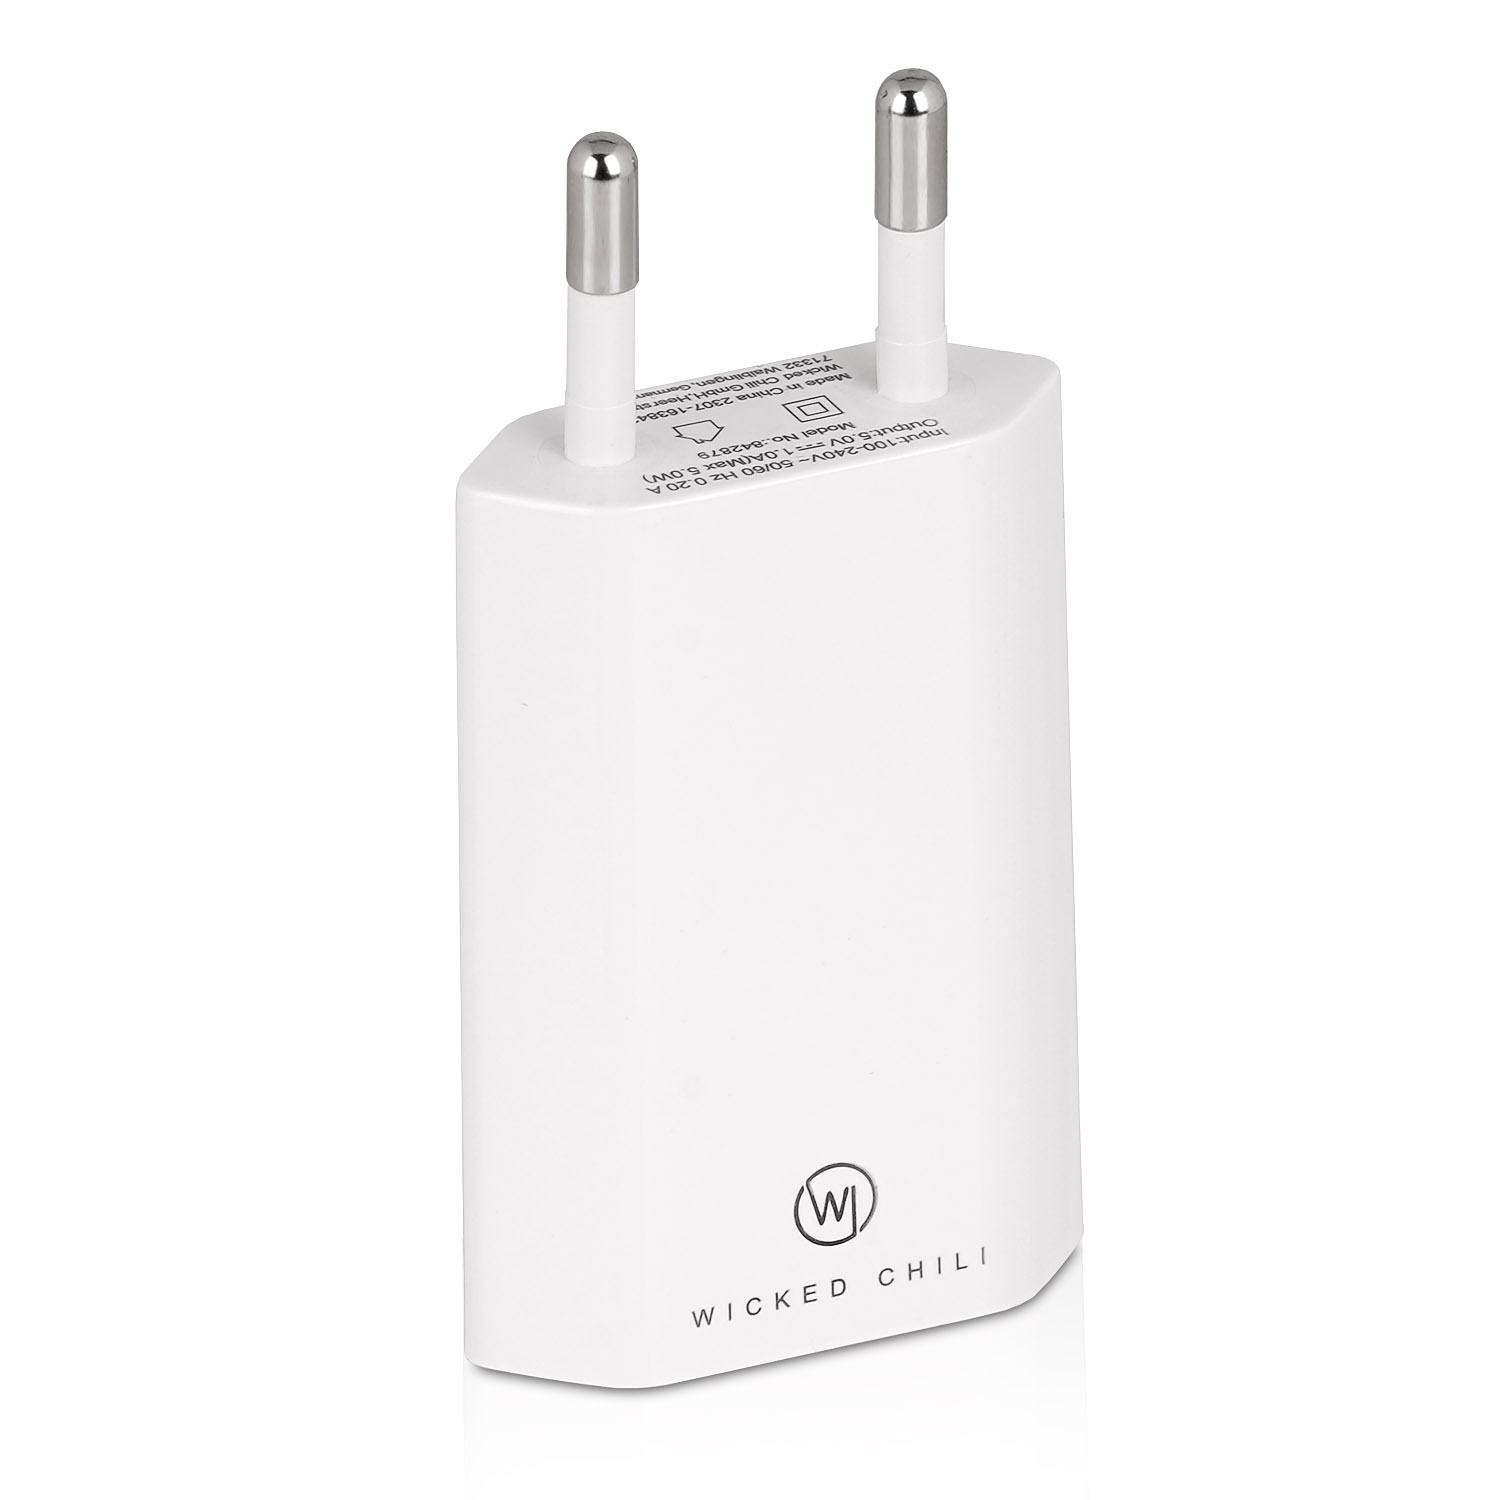 CHILI (1A, USB 2 / für / 4x Smartphone iPhone 5V) schwarz weiß Adapter WICKED Ladegerät / Galaxy Handy Netzteil USB Samsung 2